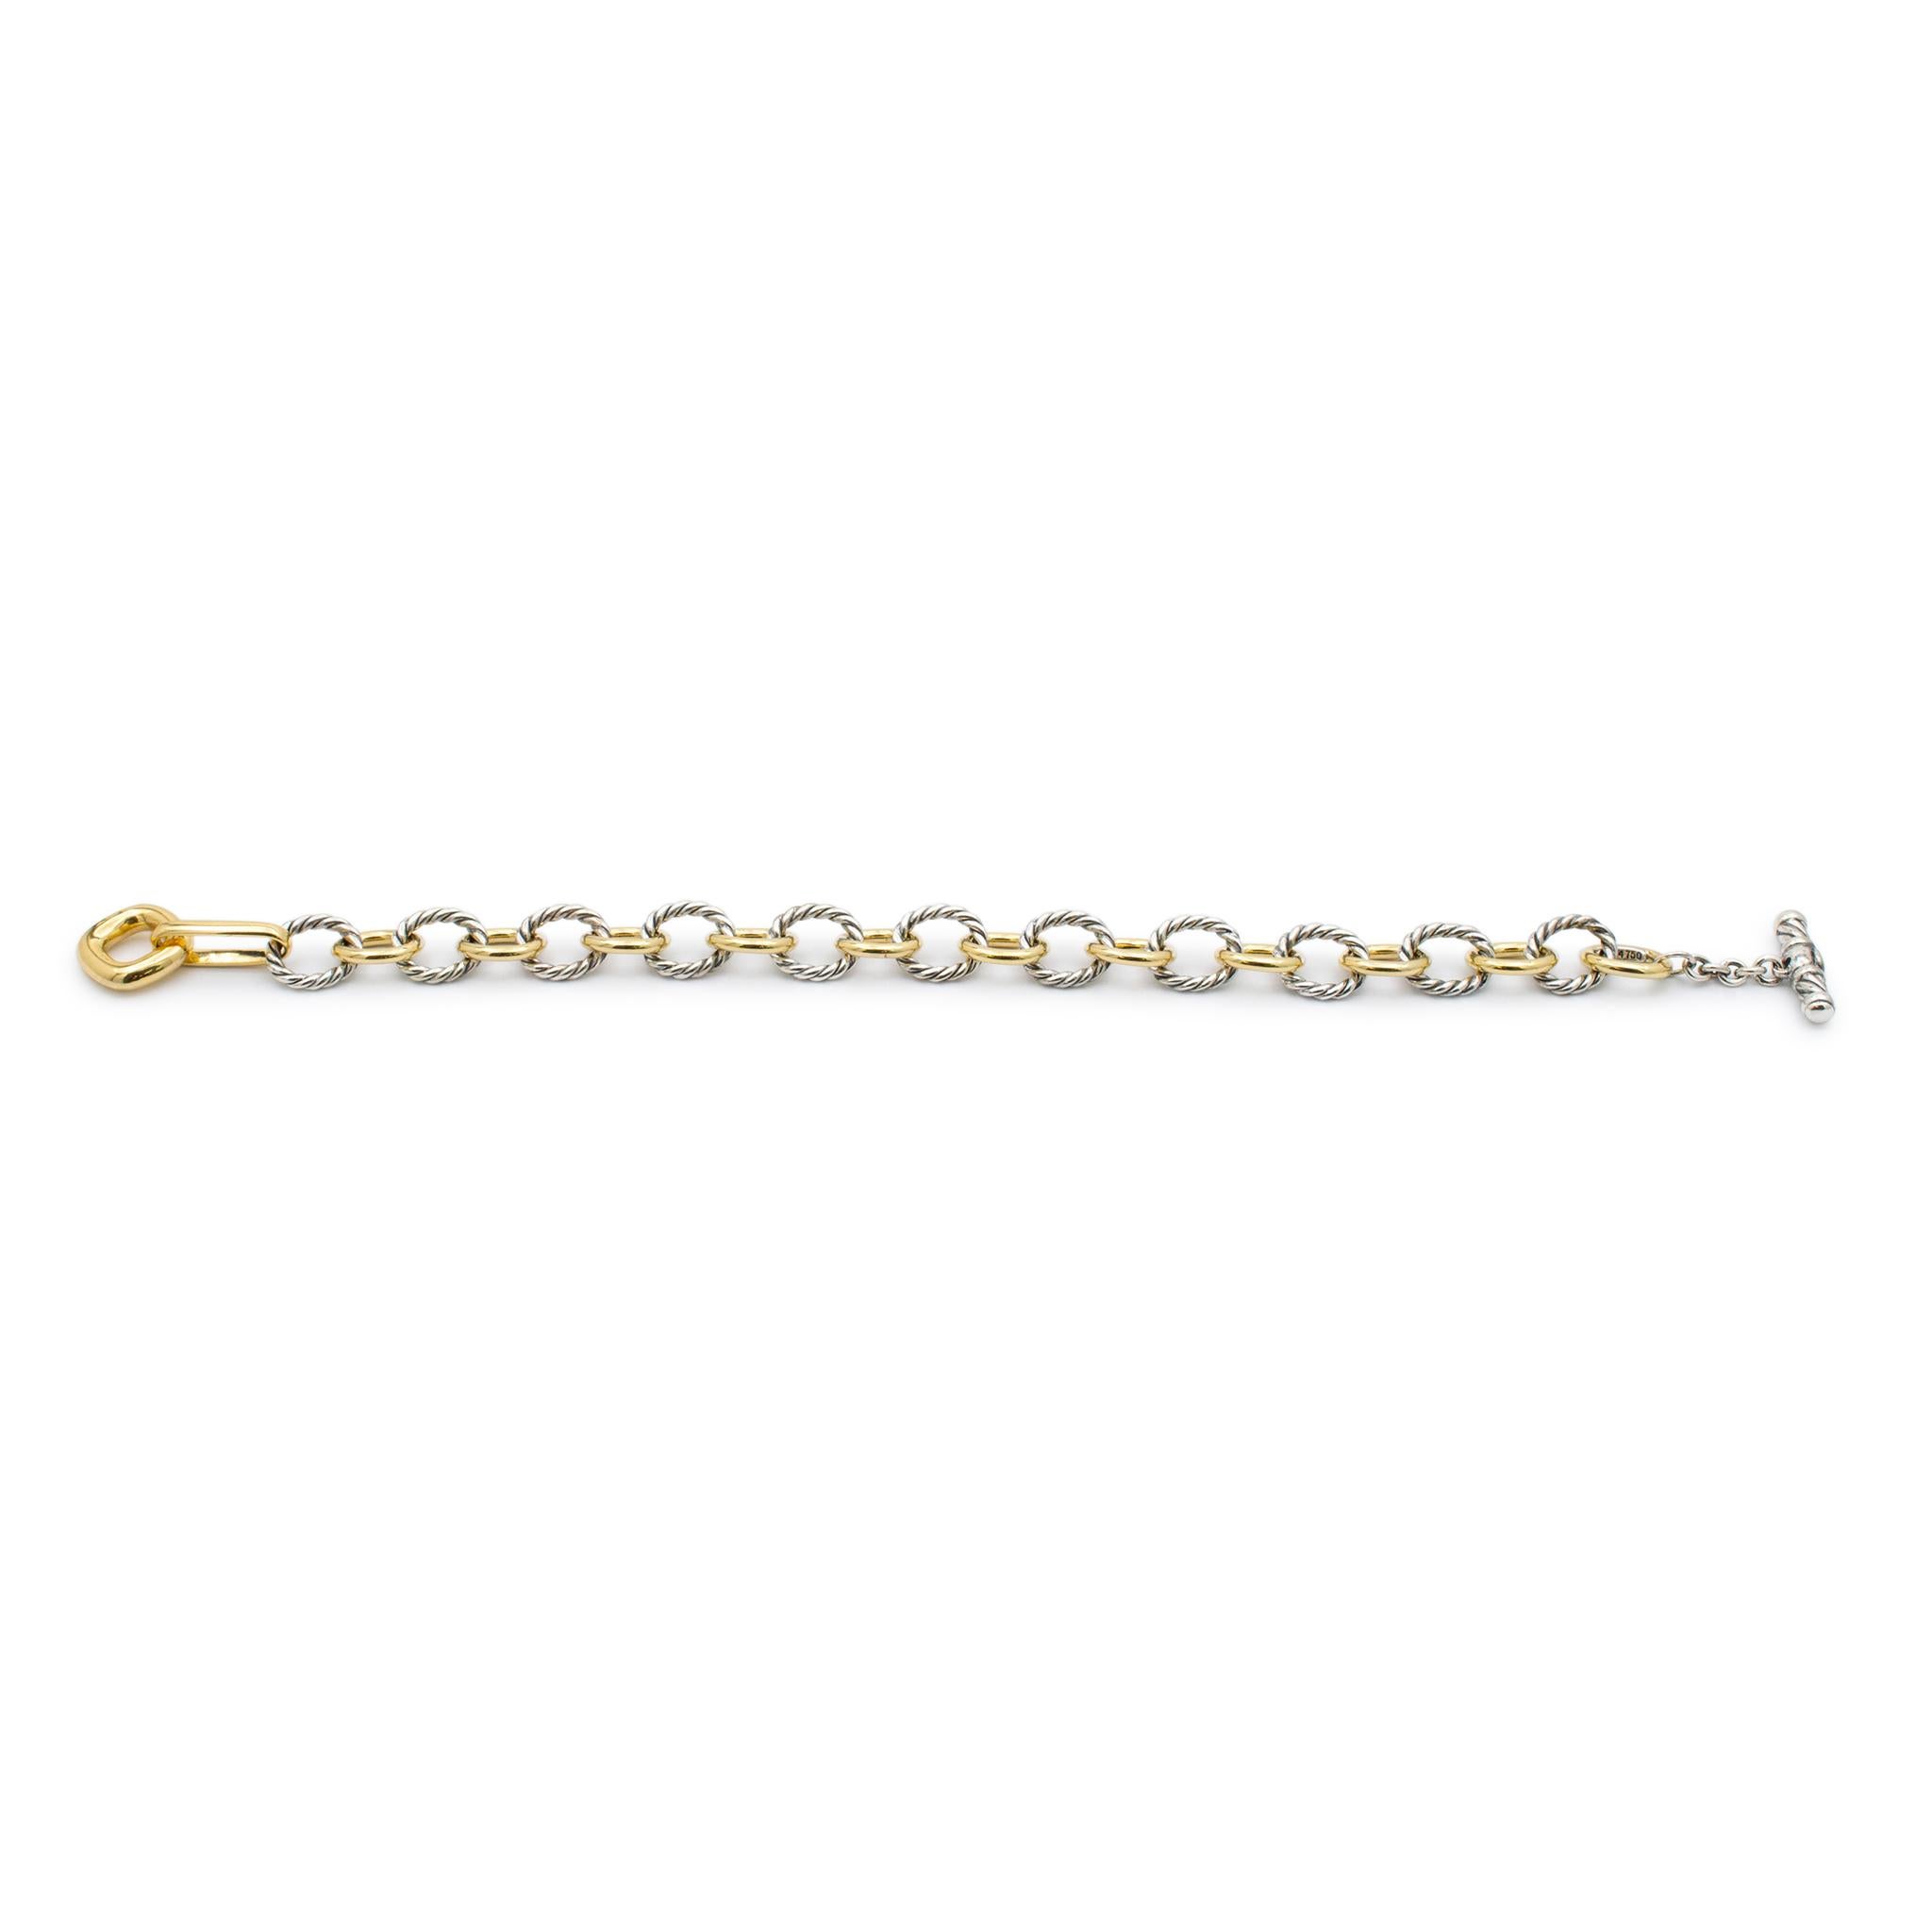 Women's or Men's David Yurman 18k Yellow Gold & 925 Sterling Silver Oval Link Chain Bracelet